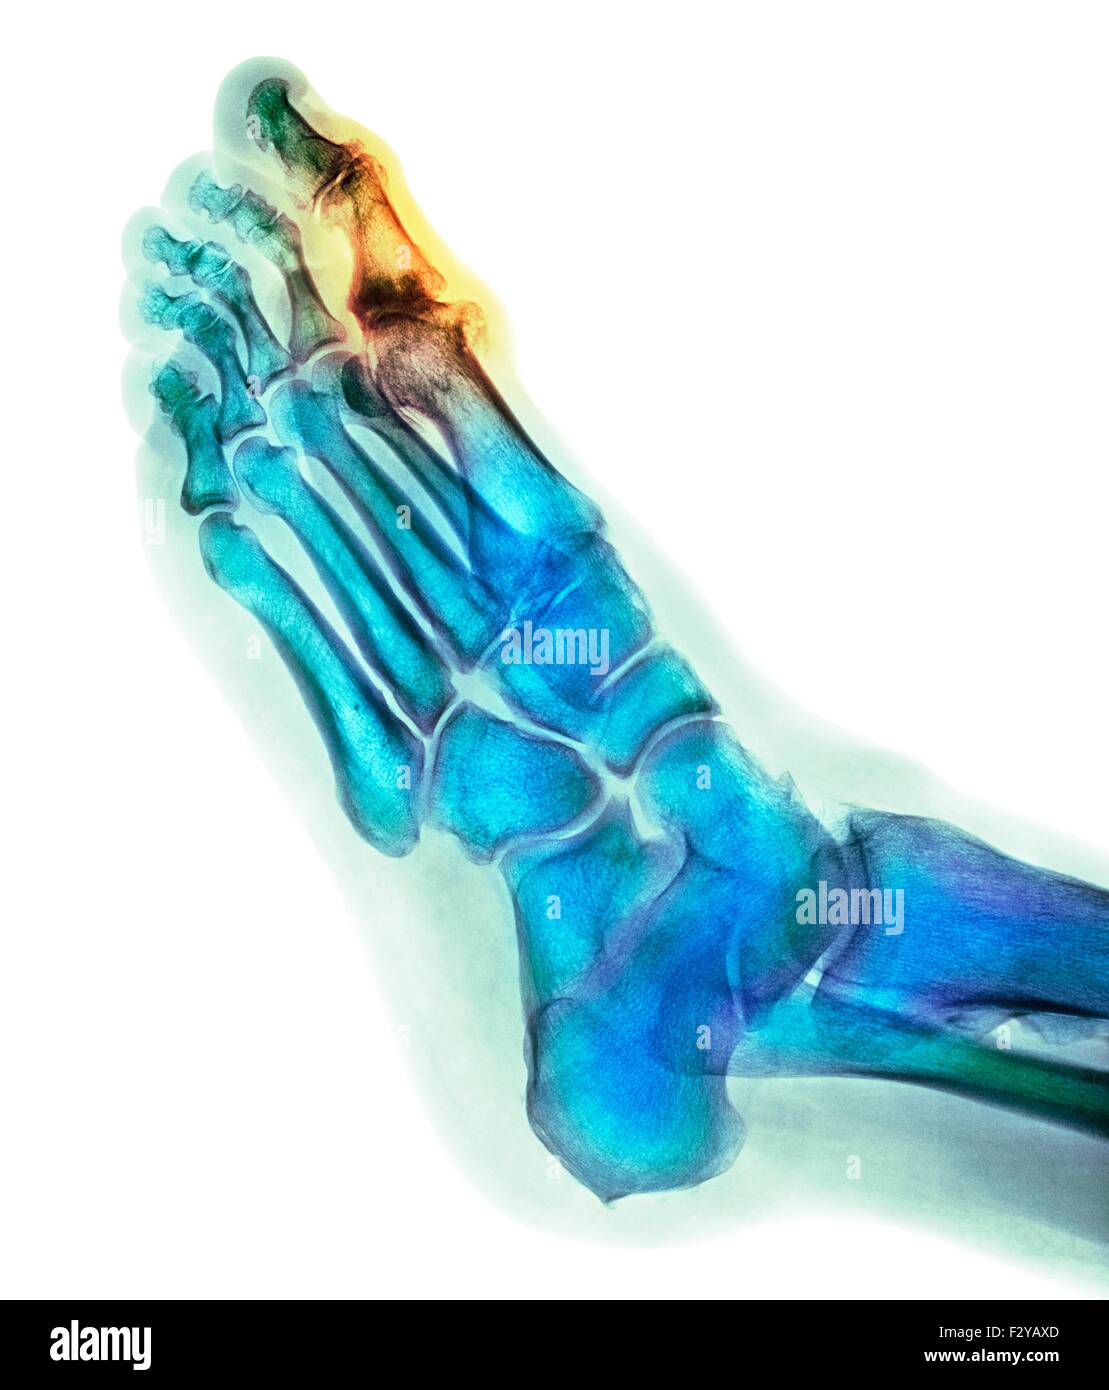 Degenerative deformazione del piede. Colorato X-ray di una sezione attraverso il piede di un 66-anno-vecchio paziente di sesso maschile con un grave cambiamento degenerativa nel metatarsophalangeal (MTP) giunto (evidenziato) dell'alluce (top). Il protocollo MTP giunti sono le articolazioni tra le ossa metatarsali del piede e le ossa prossimali (prossimale) delle falangi delle dita. Foto Stock